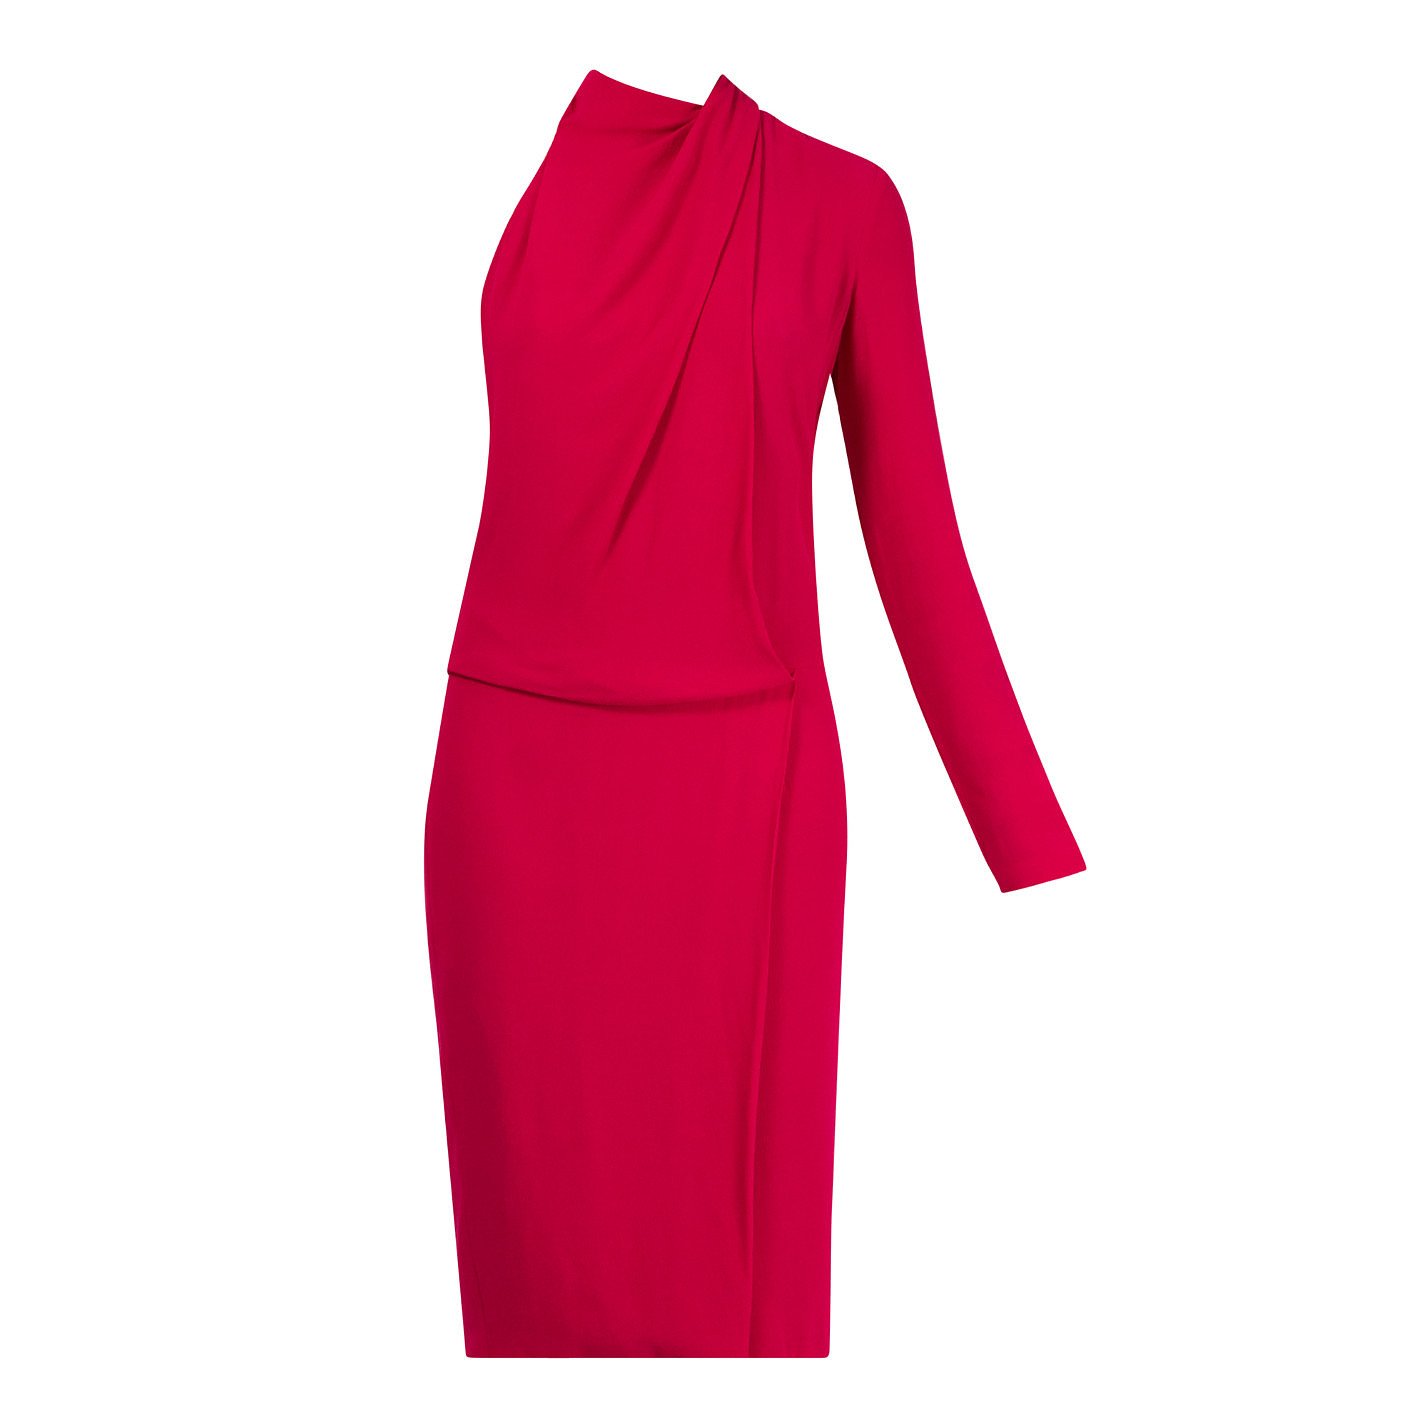 Diane von Furstenberg One-Sleeve Dress